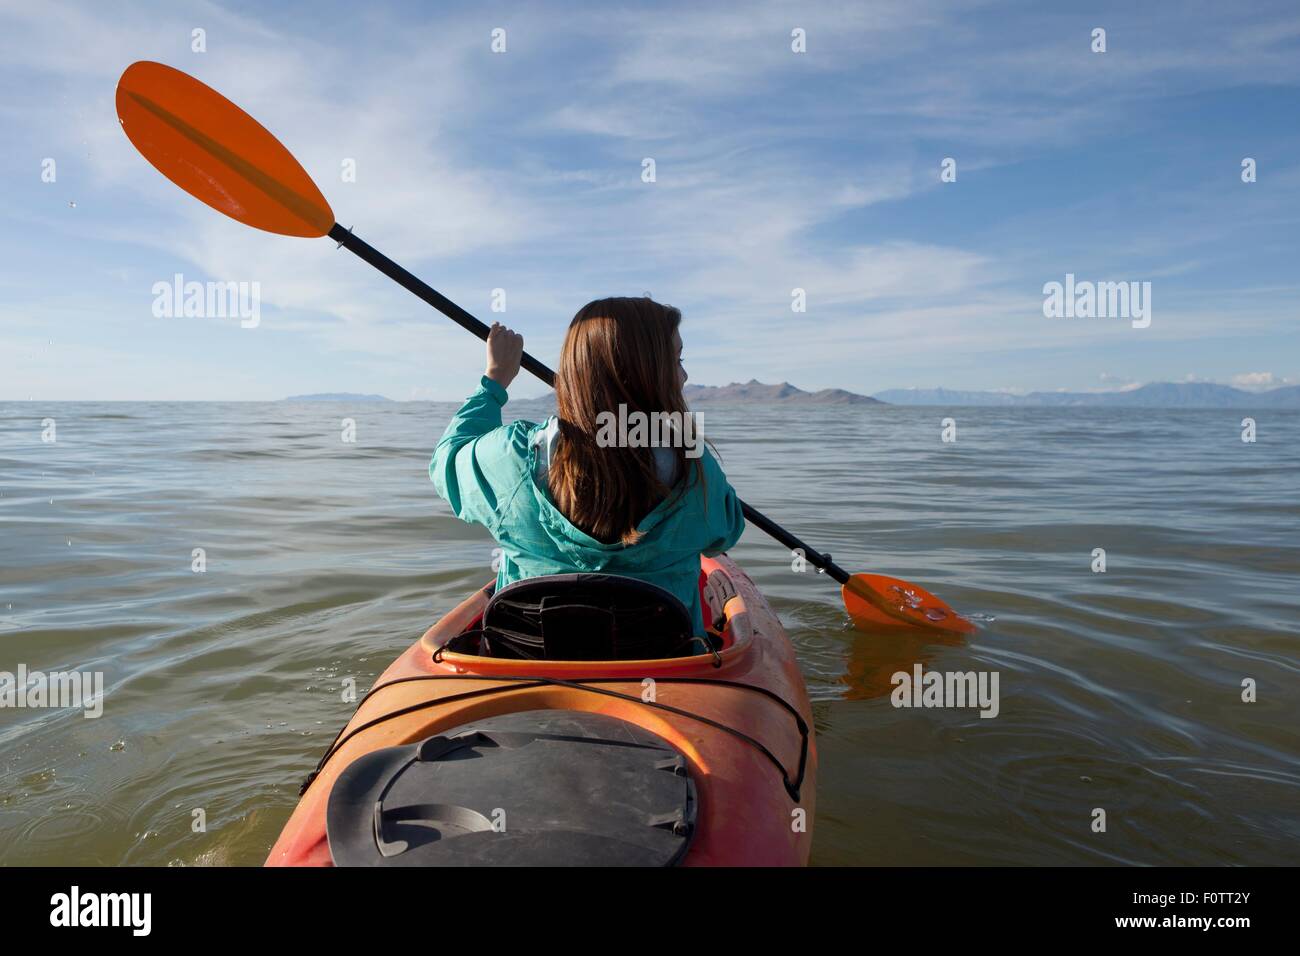 Rear view of young woman kayaking, holding paddles, Great Salt Lake, Utah, USA Stock Photo